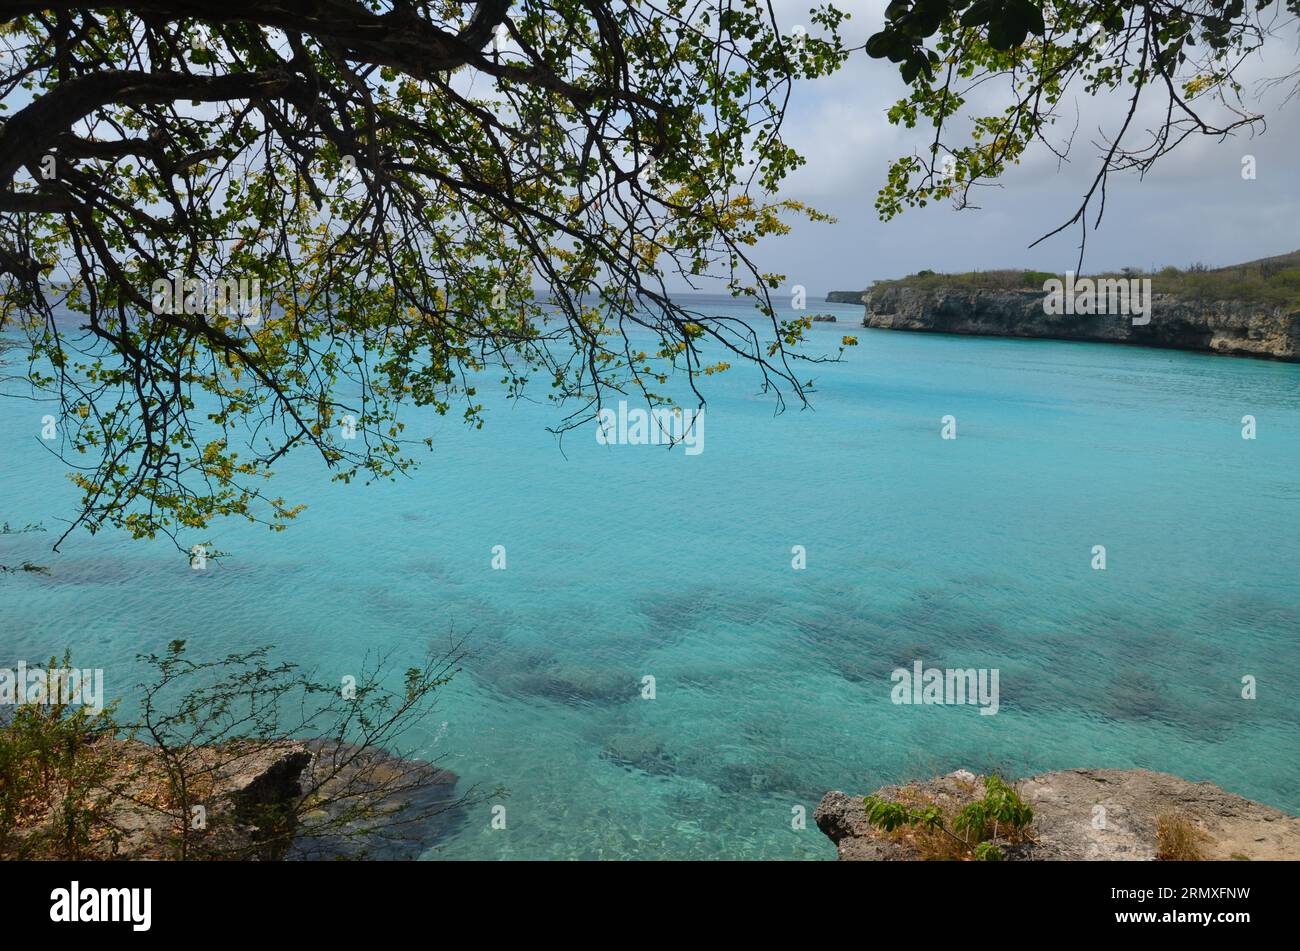 Landschaft mit Pflanzen, Felsen und dem wunderschönen türkisfarbenen Wasser der karibik auf Curacao Stockfoto